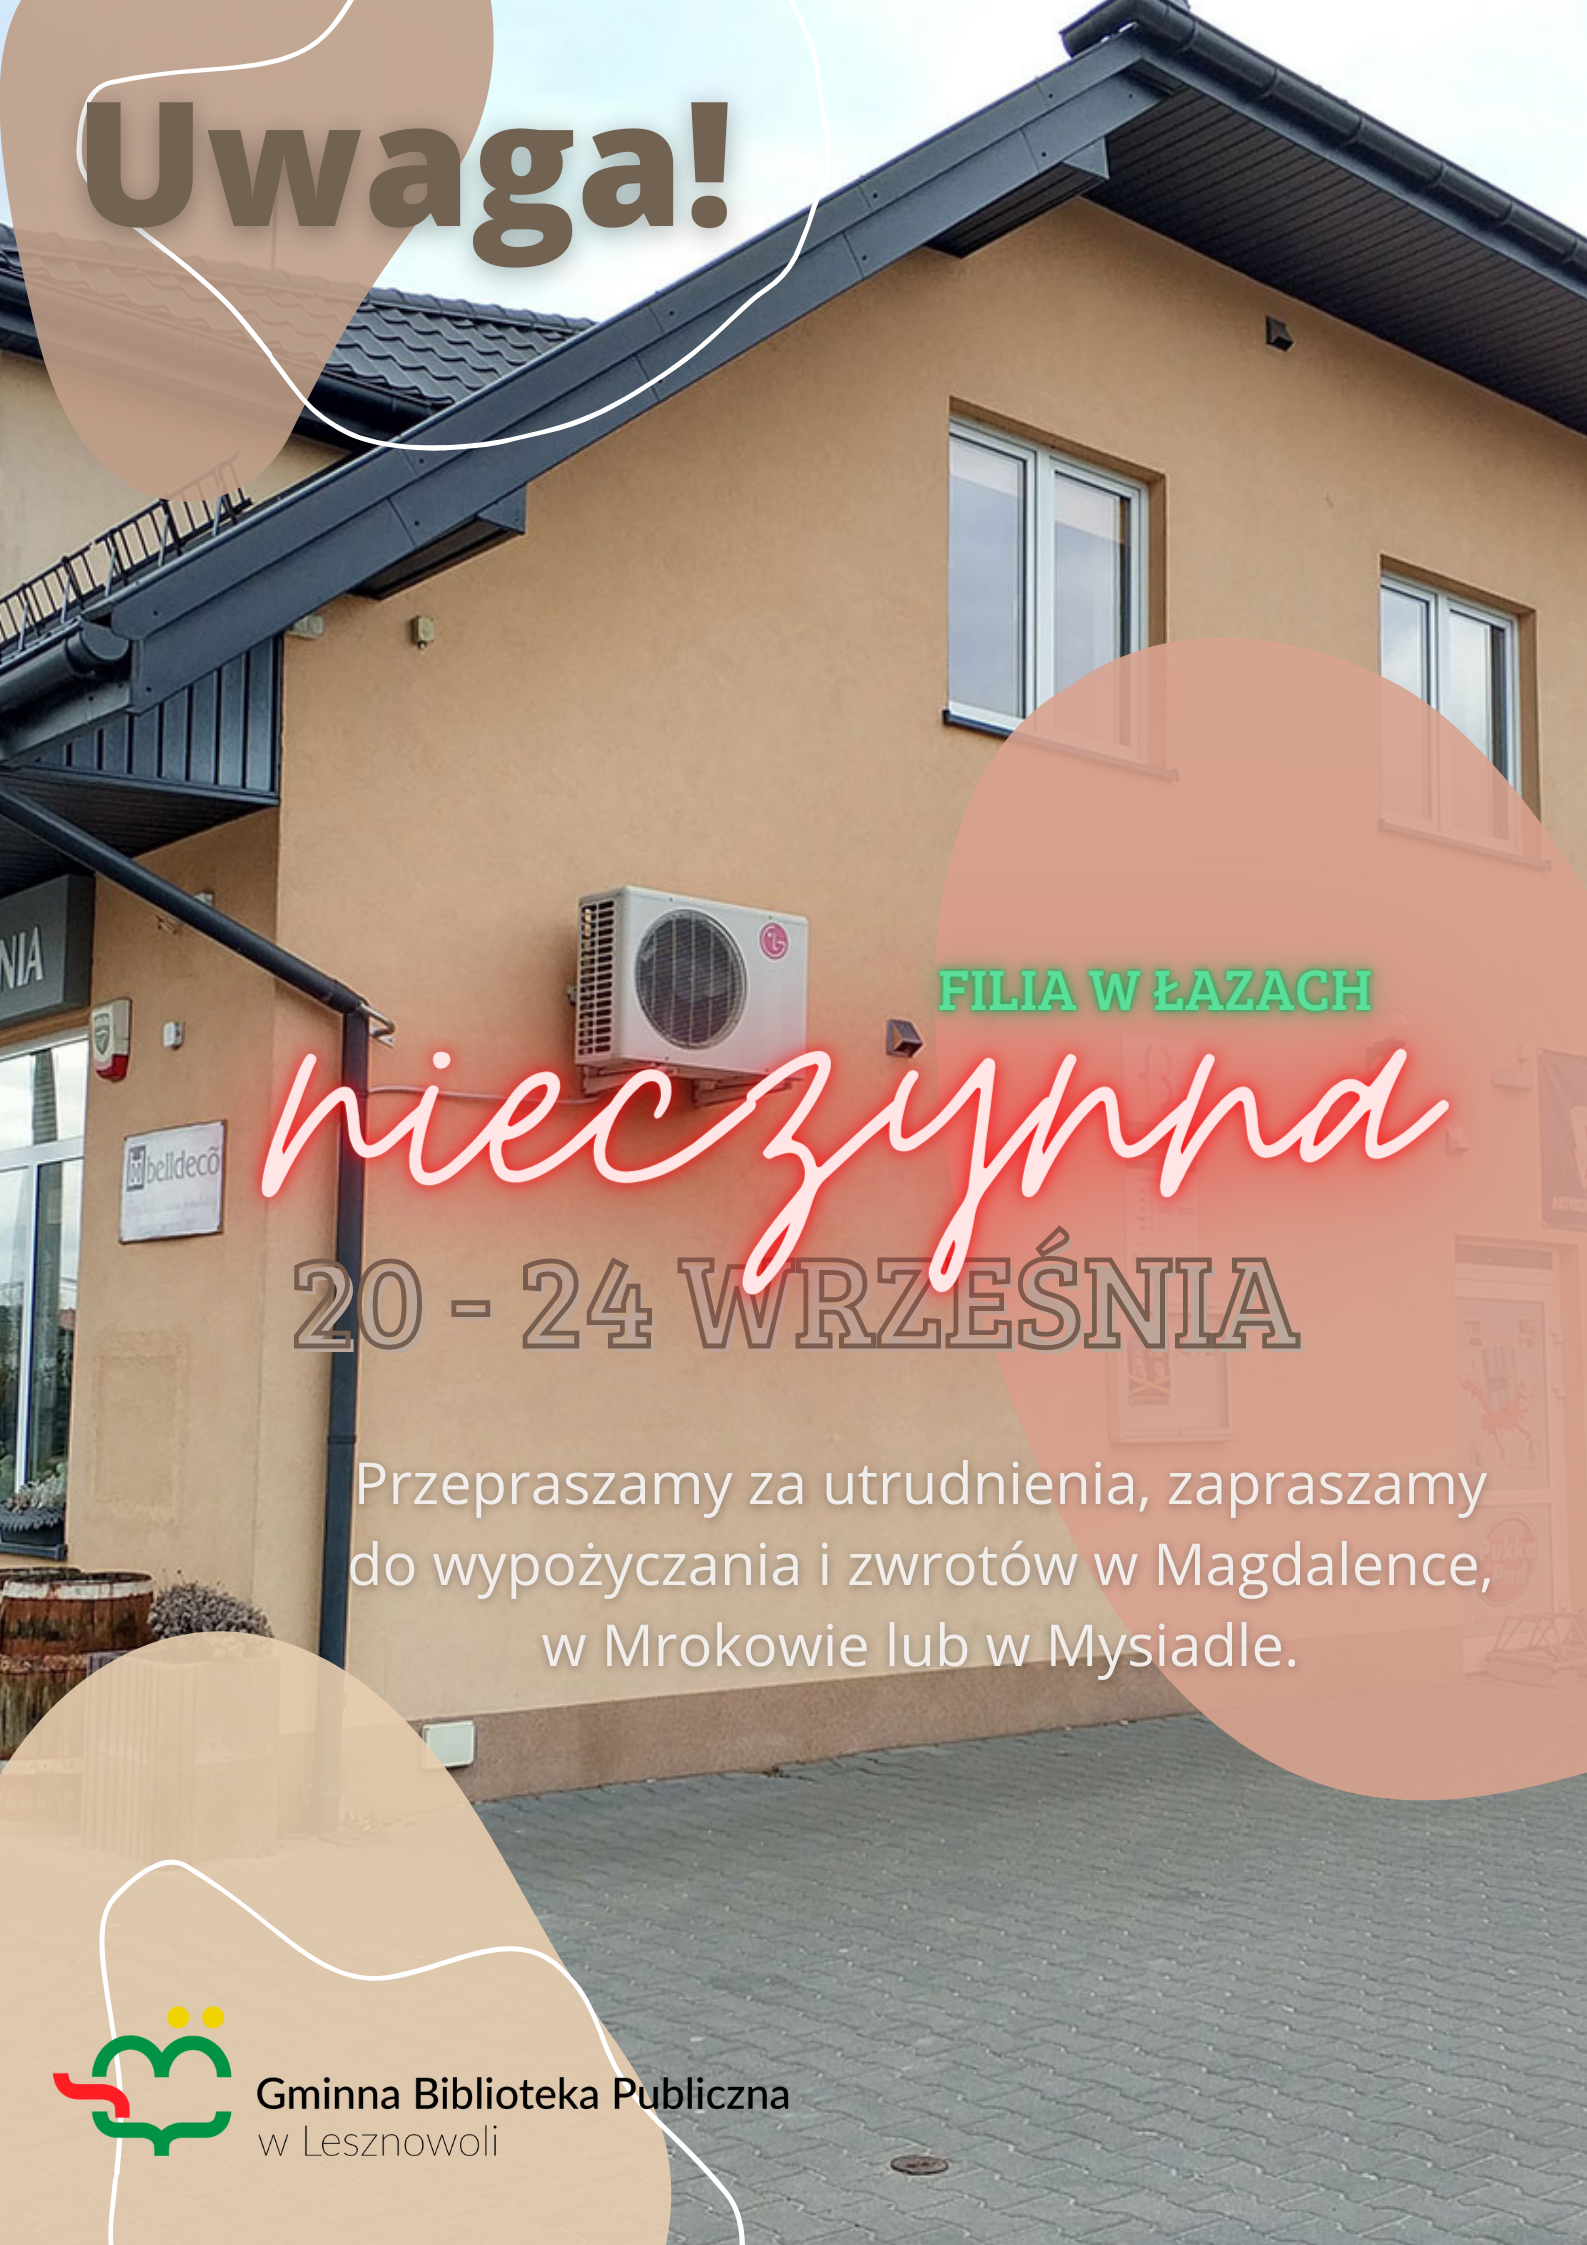 You are currently viewing 20-24 września filia w Łazach NIECZYNNA